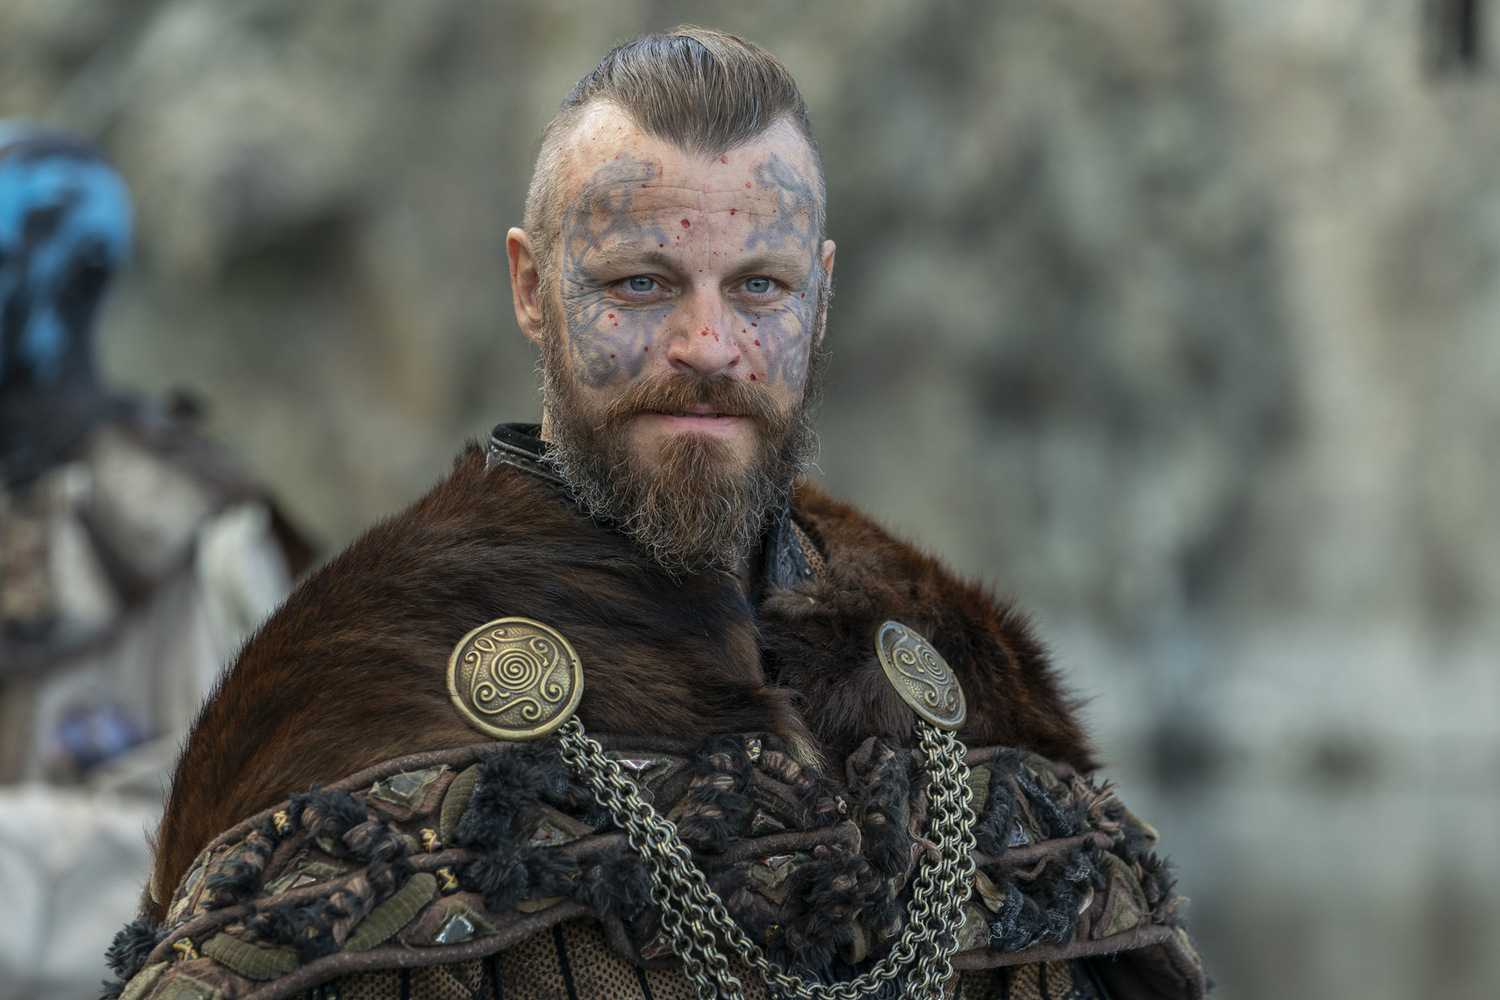 Кто есть кто в сериале "викинги": актеры и роли, исторические пер...